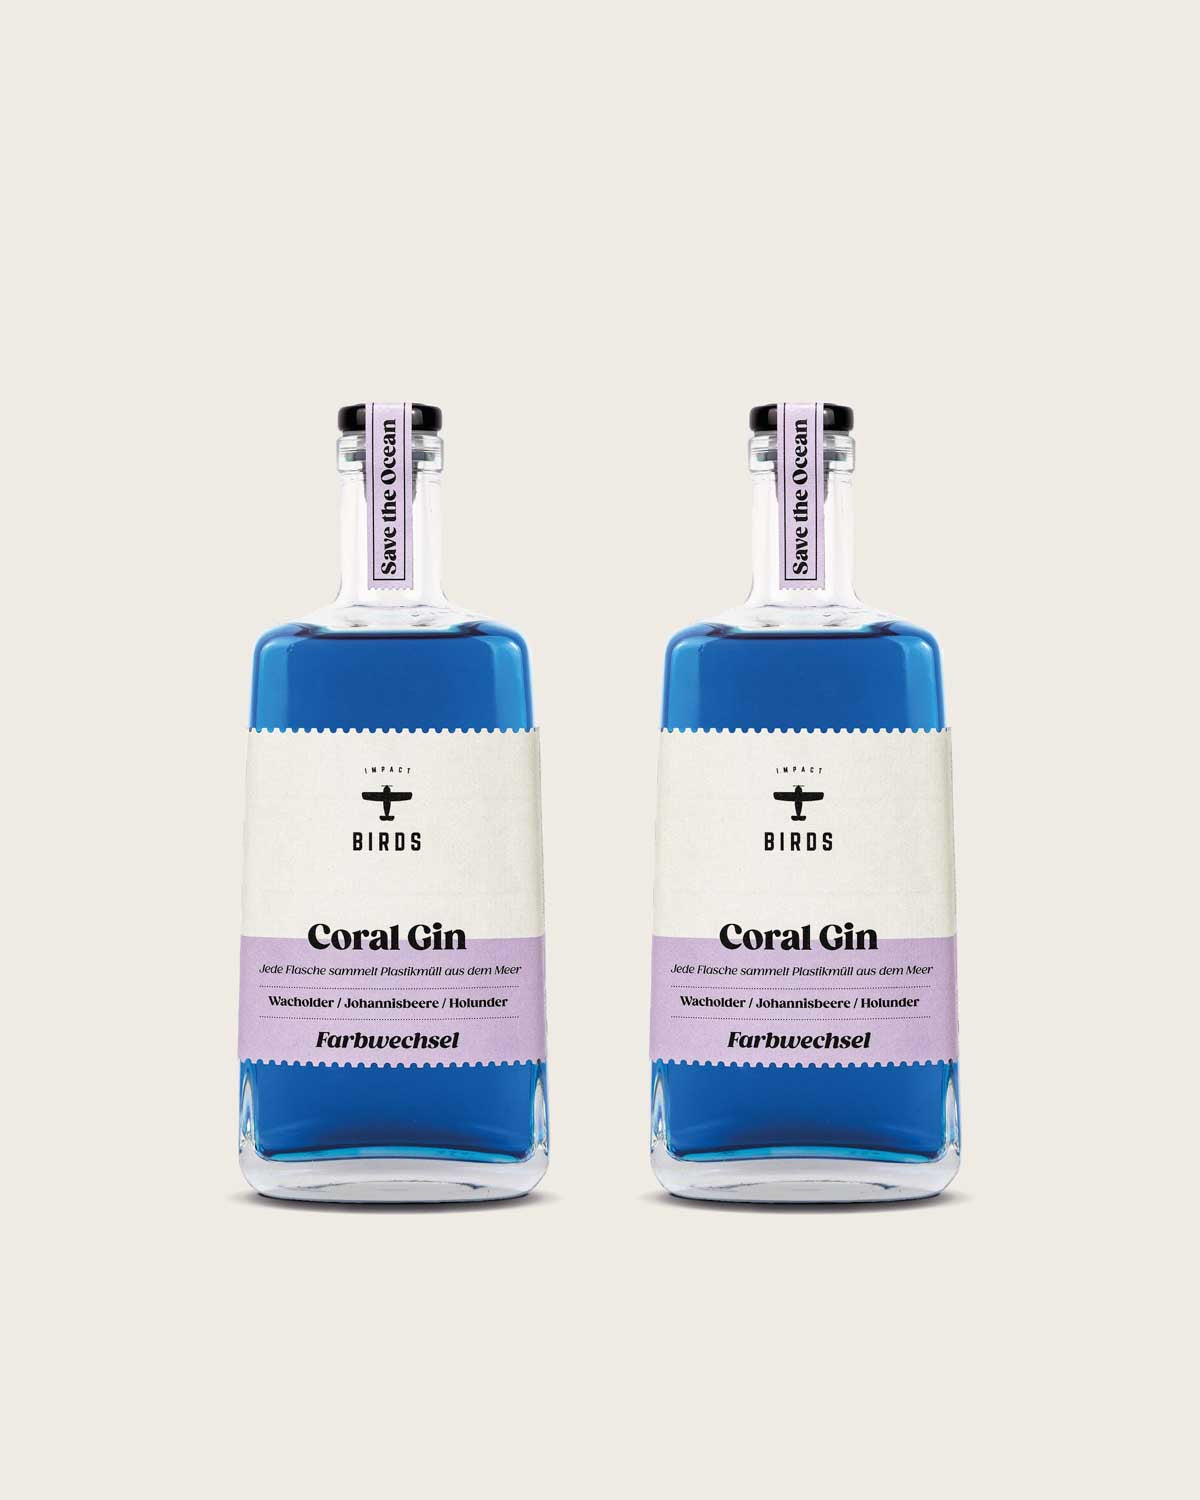 Zu sehen sind zwei Flaschen unseres Coral Gin, der Farbwechsel Gin mit Impact. Es handelt sich um zwei Glasflaschen, die blaue Farbe des Gins ist deutlich zu sehen. Das Etikett ist stilvoll in einem beige und lila gefärbt.